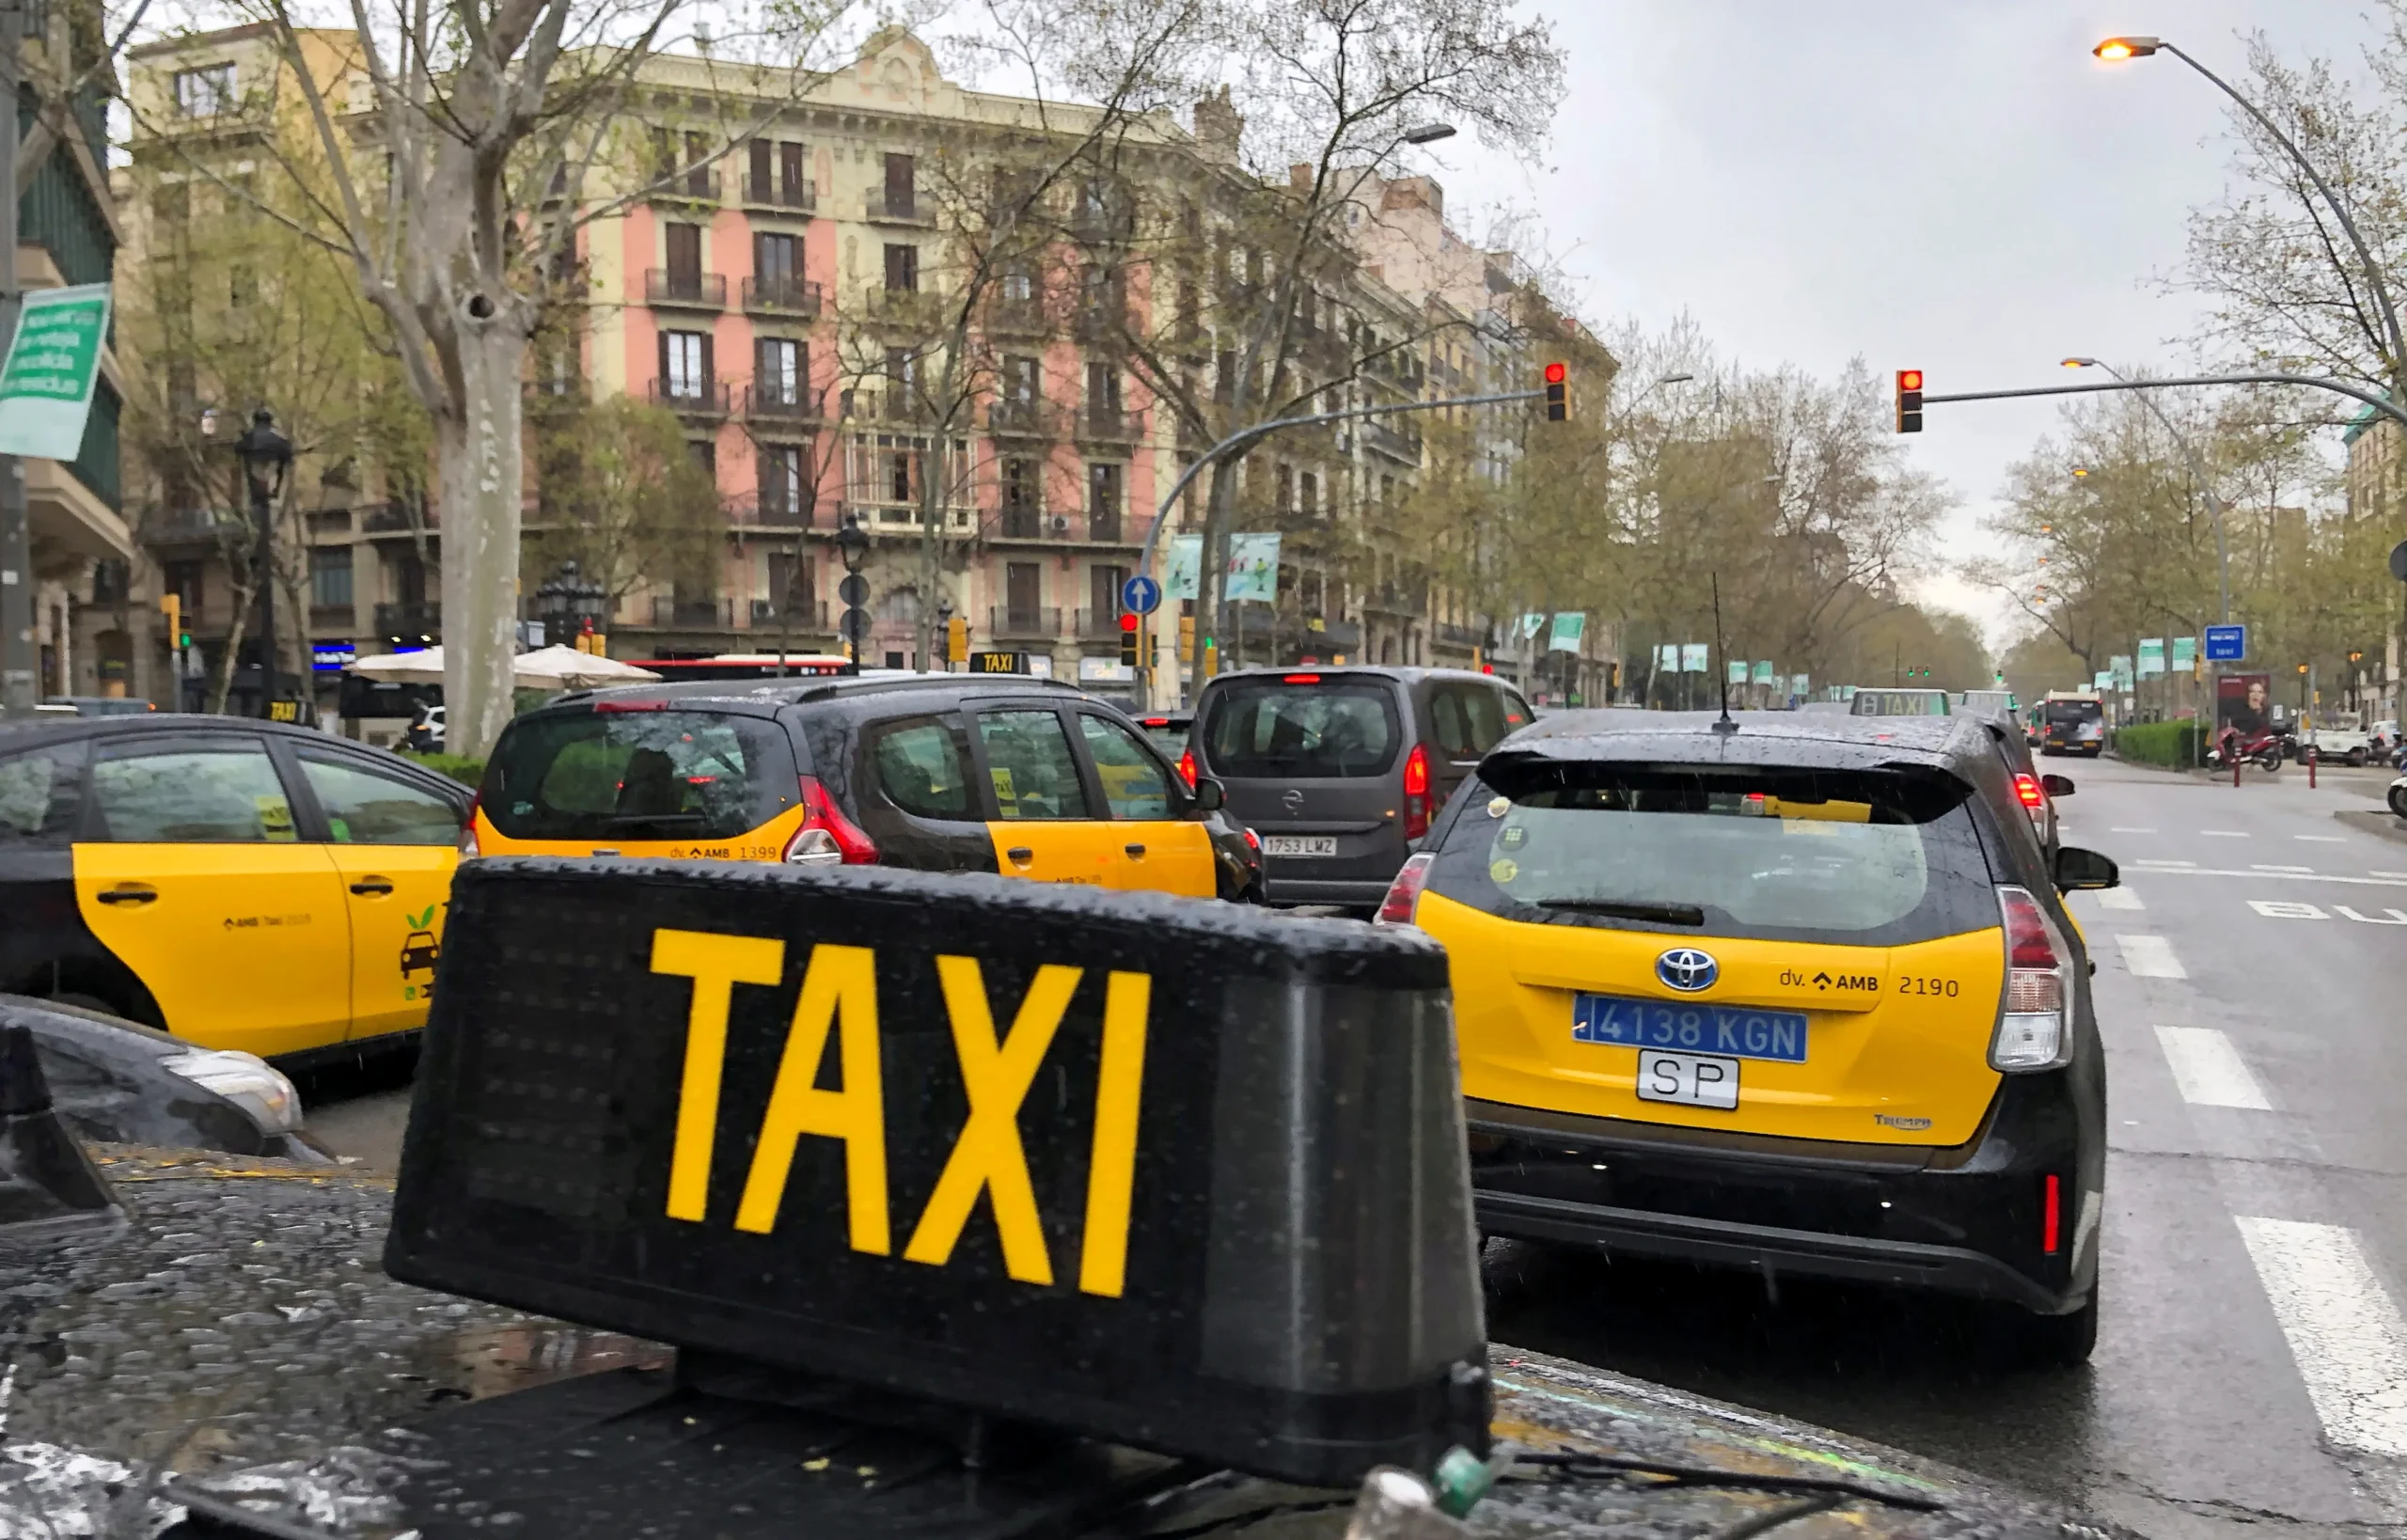 boe rendimiento taxi barcelona - Qué es la orden HFP